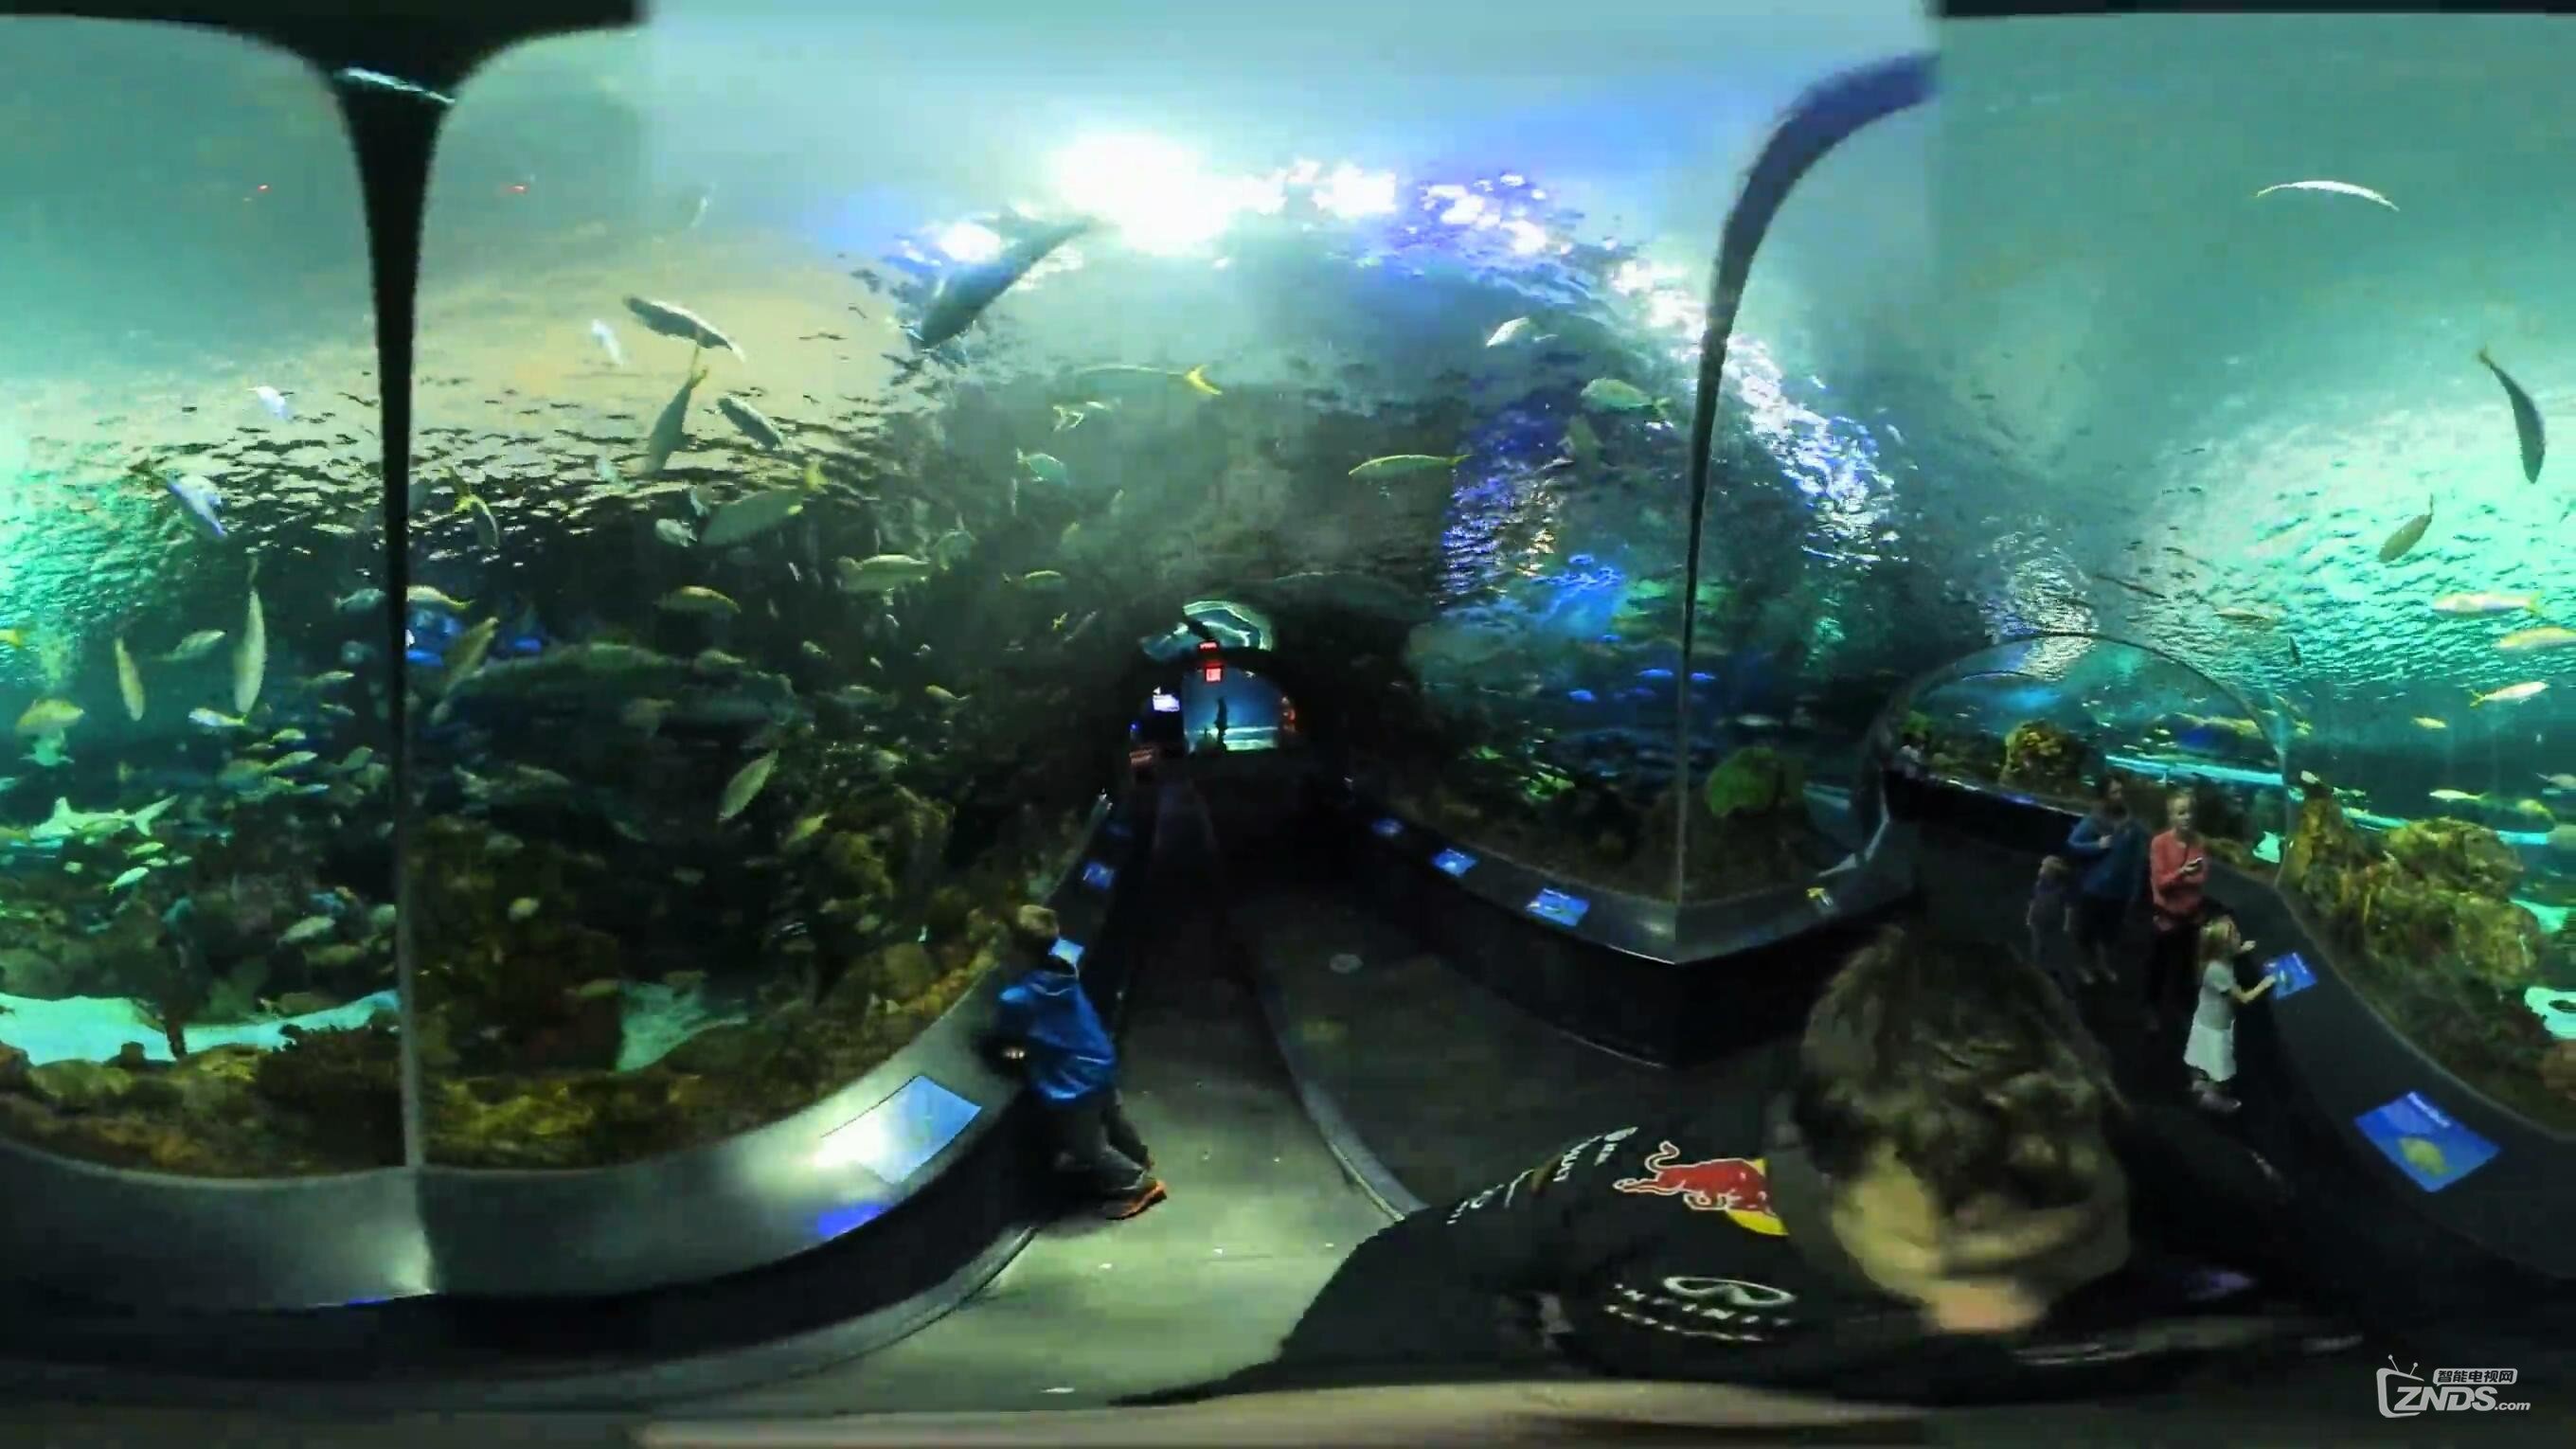 【VR带你游世界】瑞普利水族馆隧道@加拿大多伦多_20170116101618.JPG